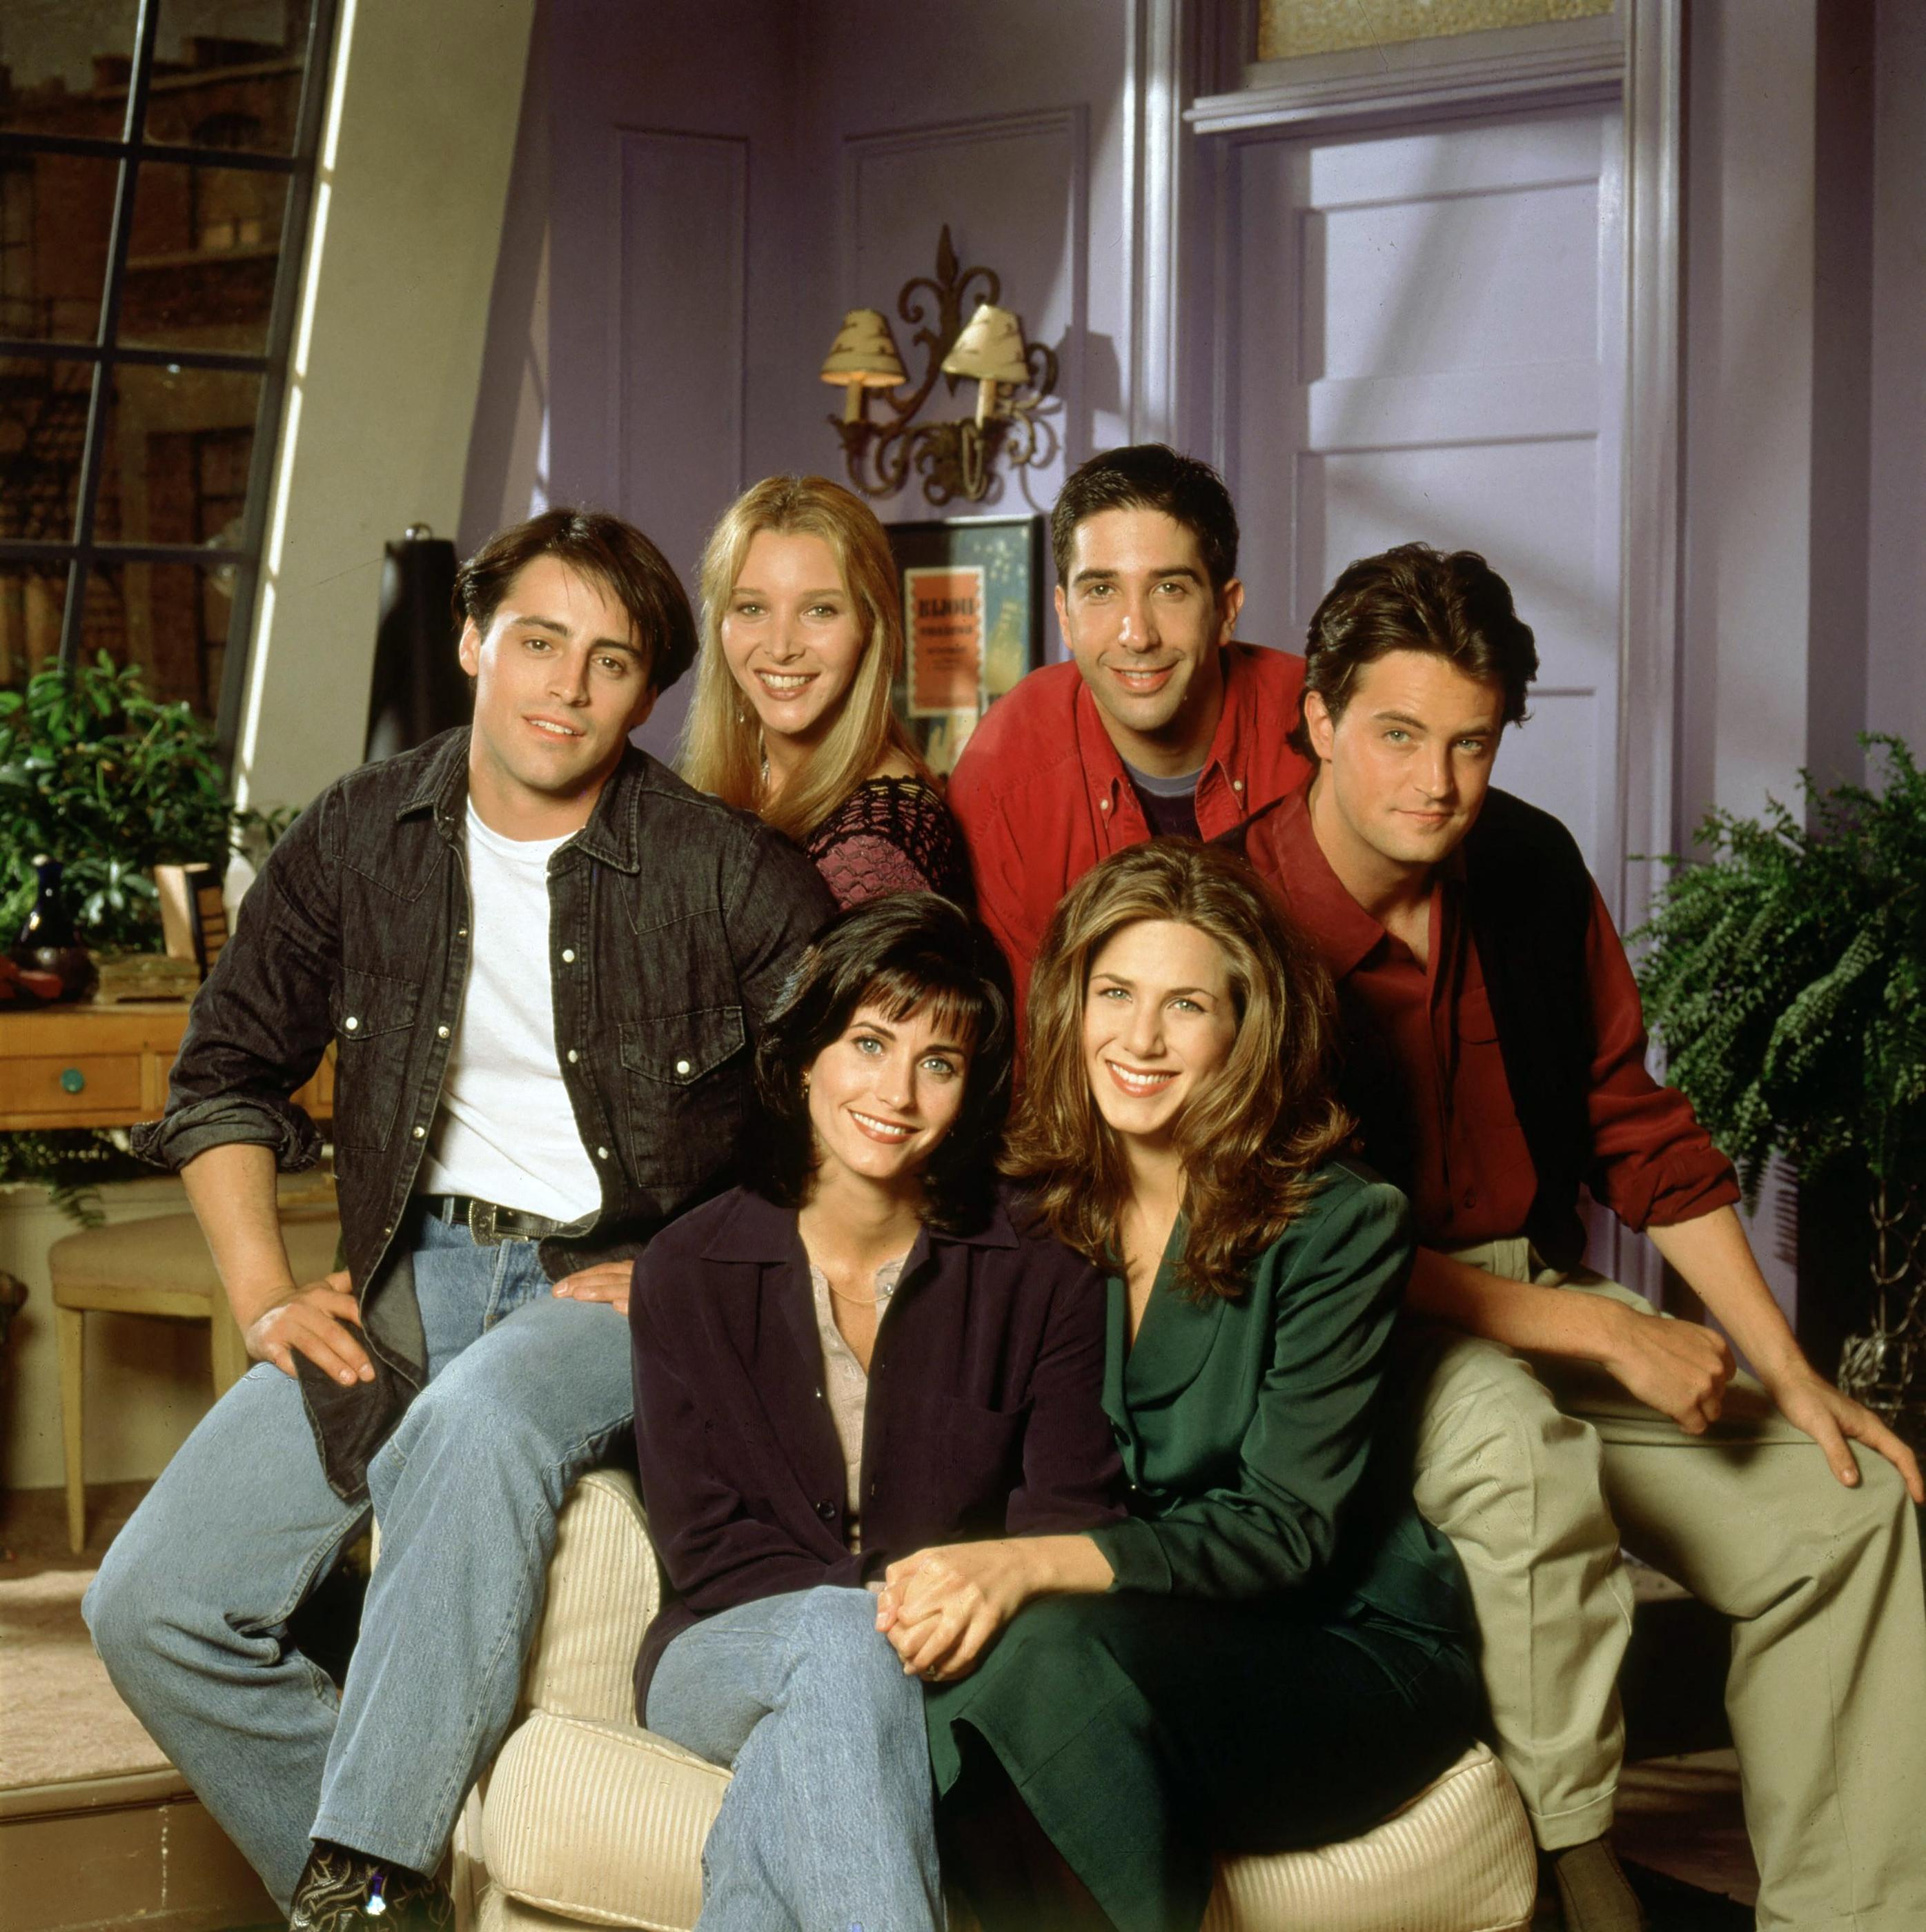 Il était Chandler, la star de la série télé Friends : Matthew